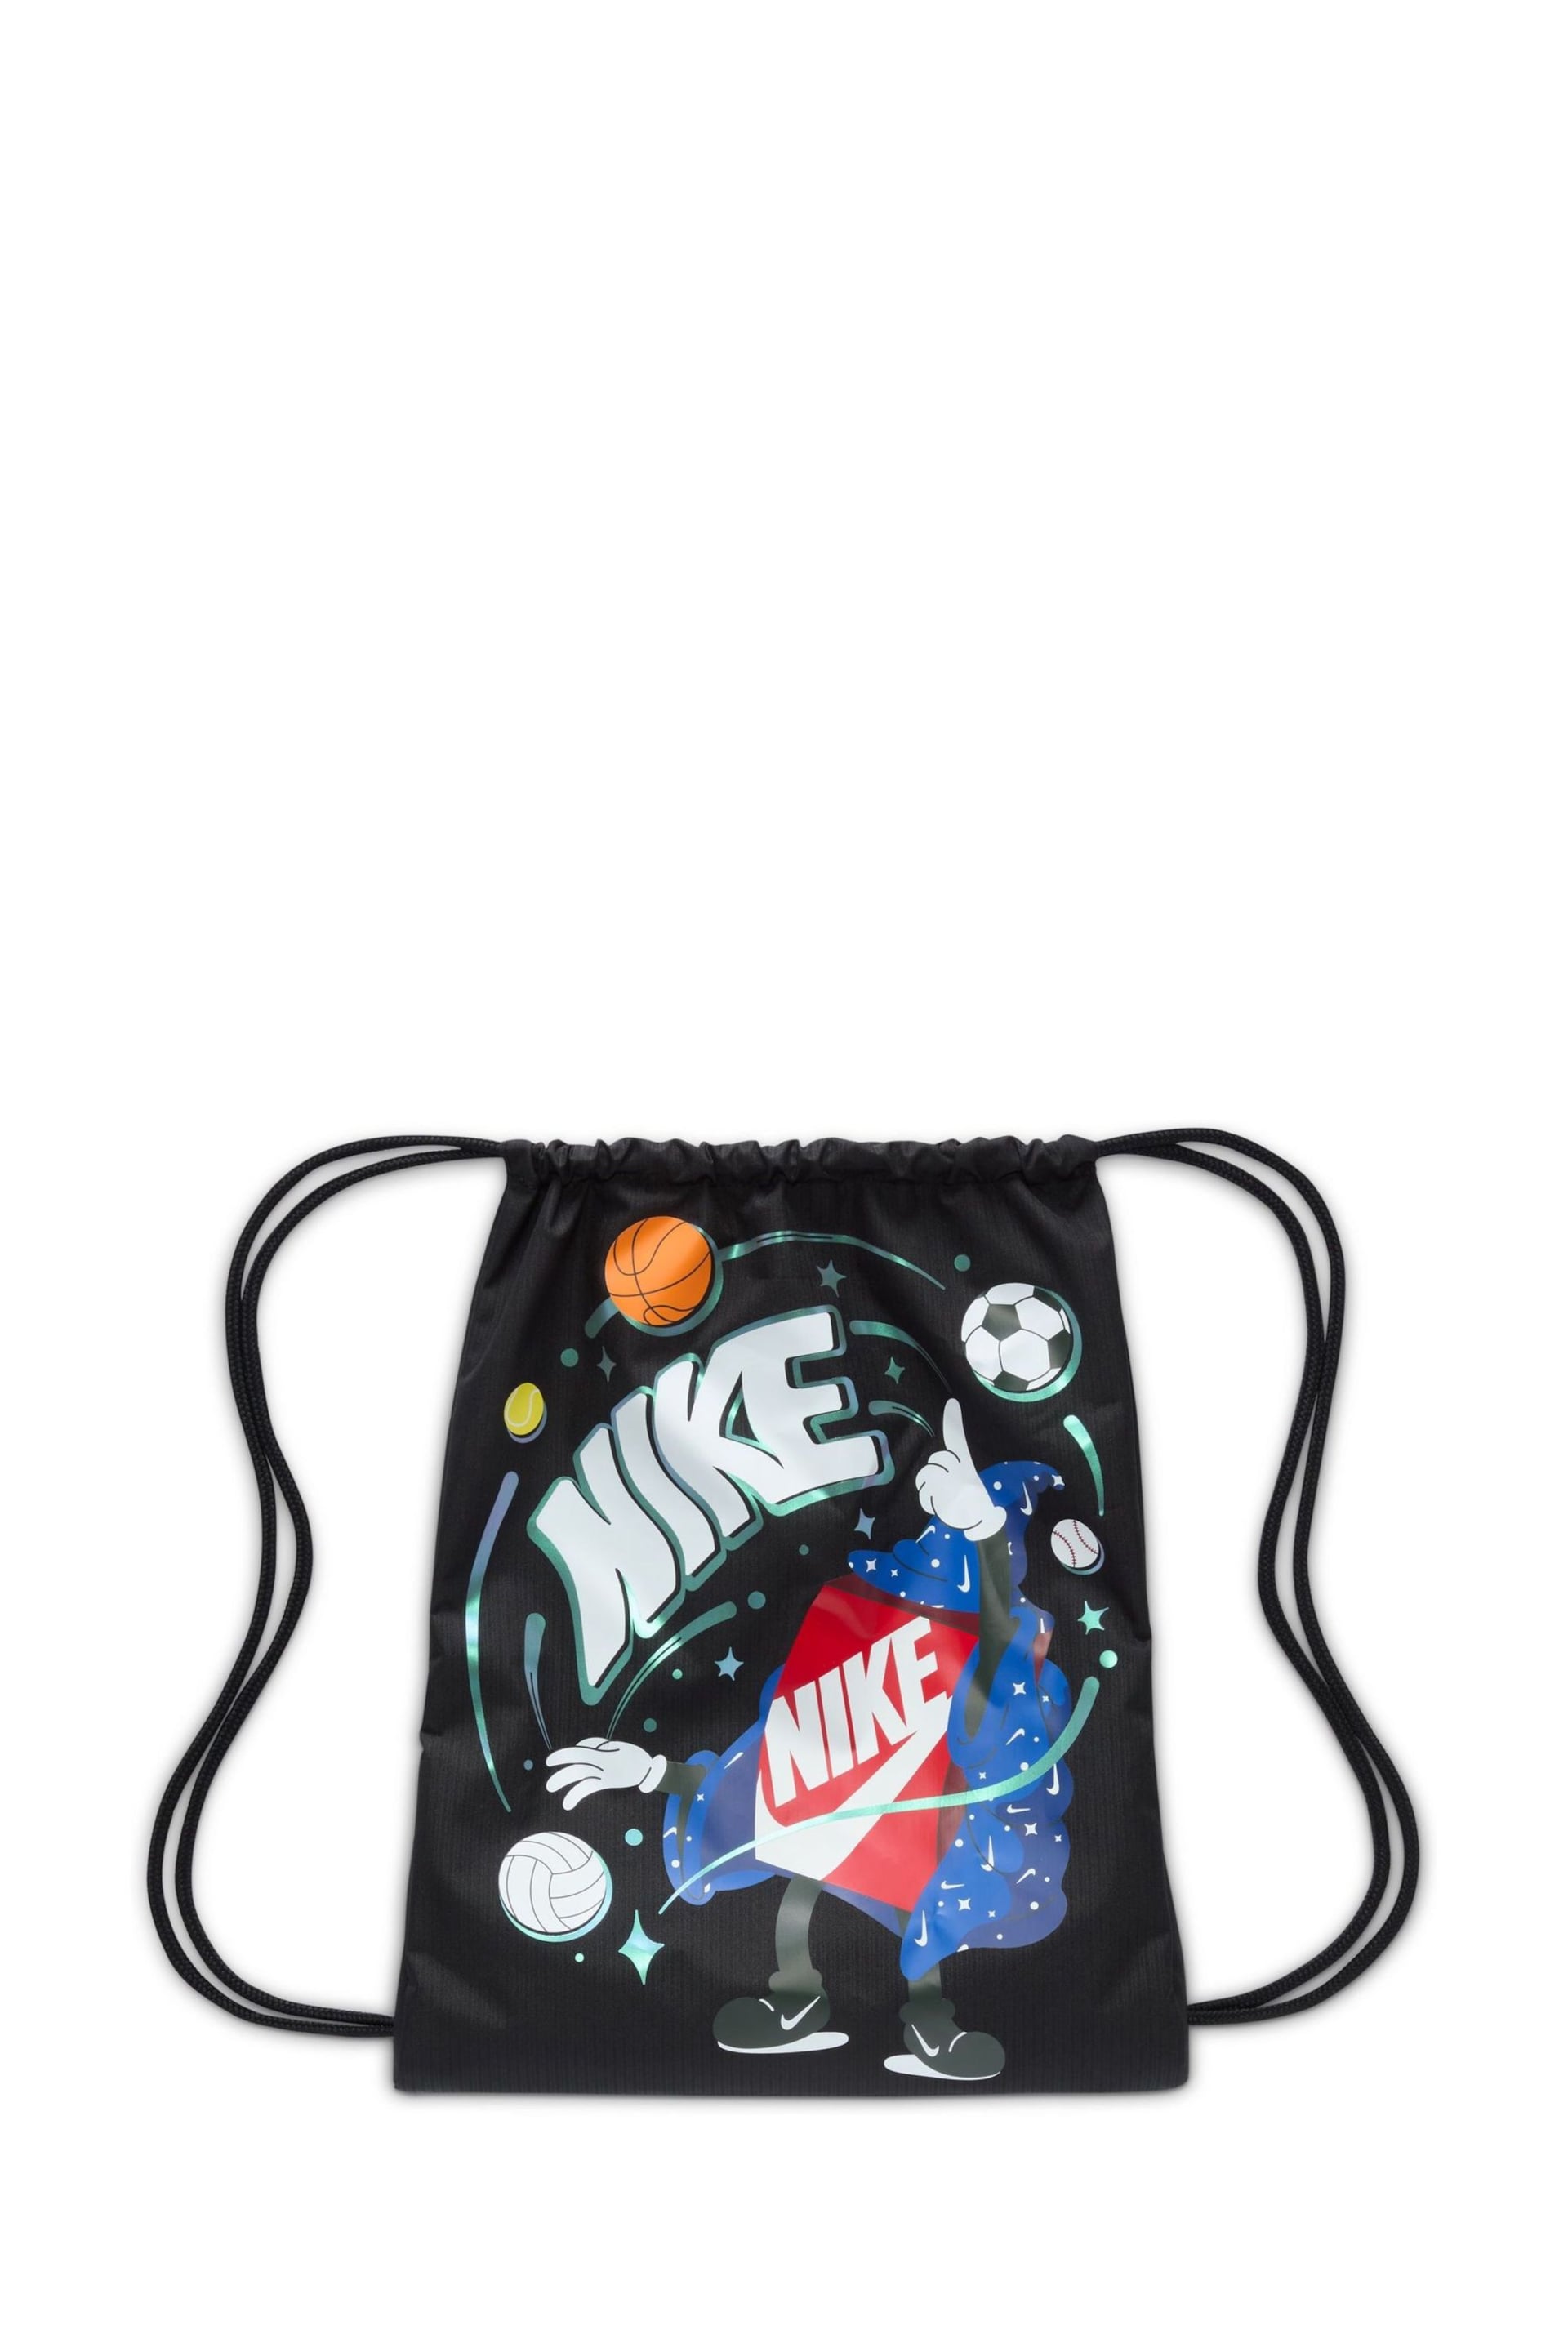 Nike Black Kids Drawstring Bag 12L - Image 3 of 7